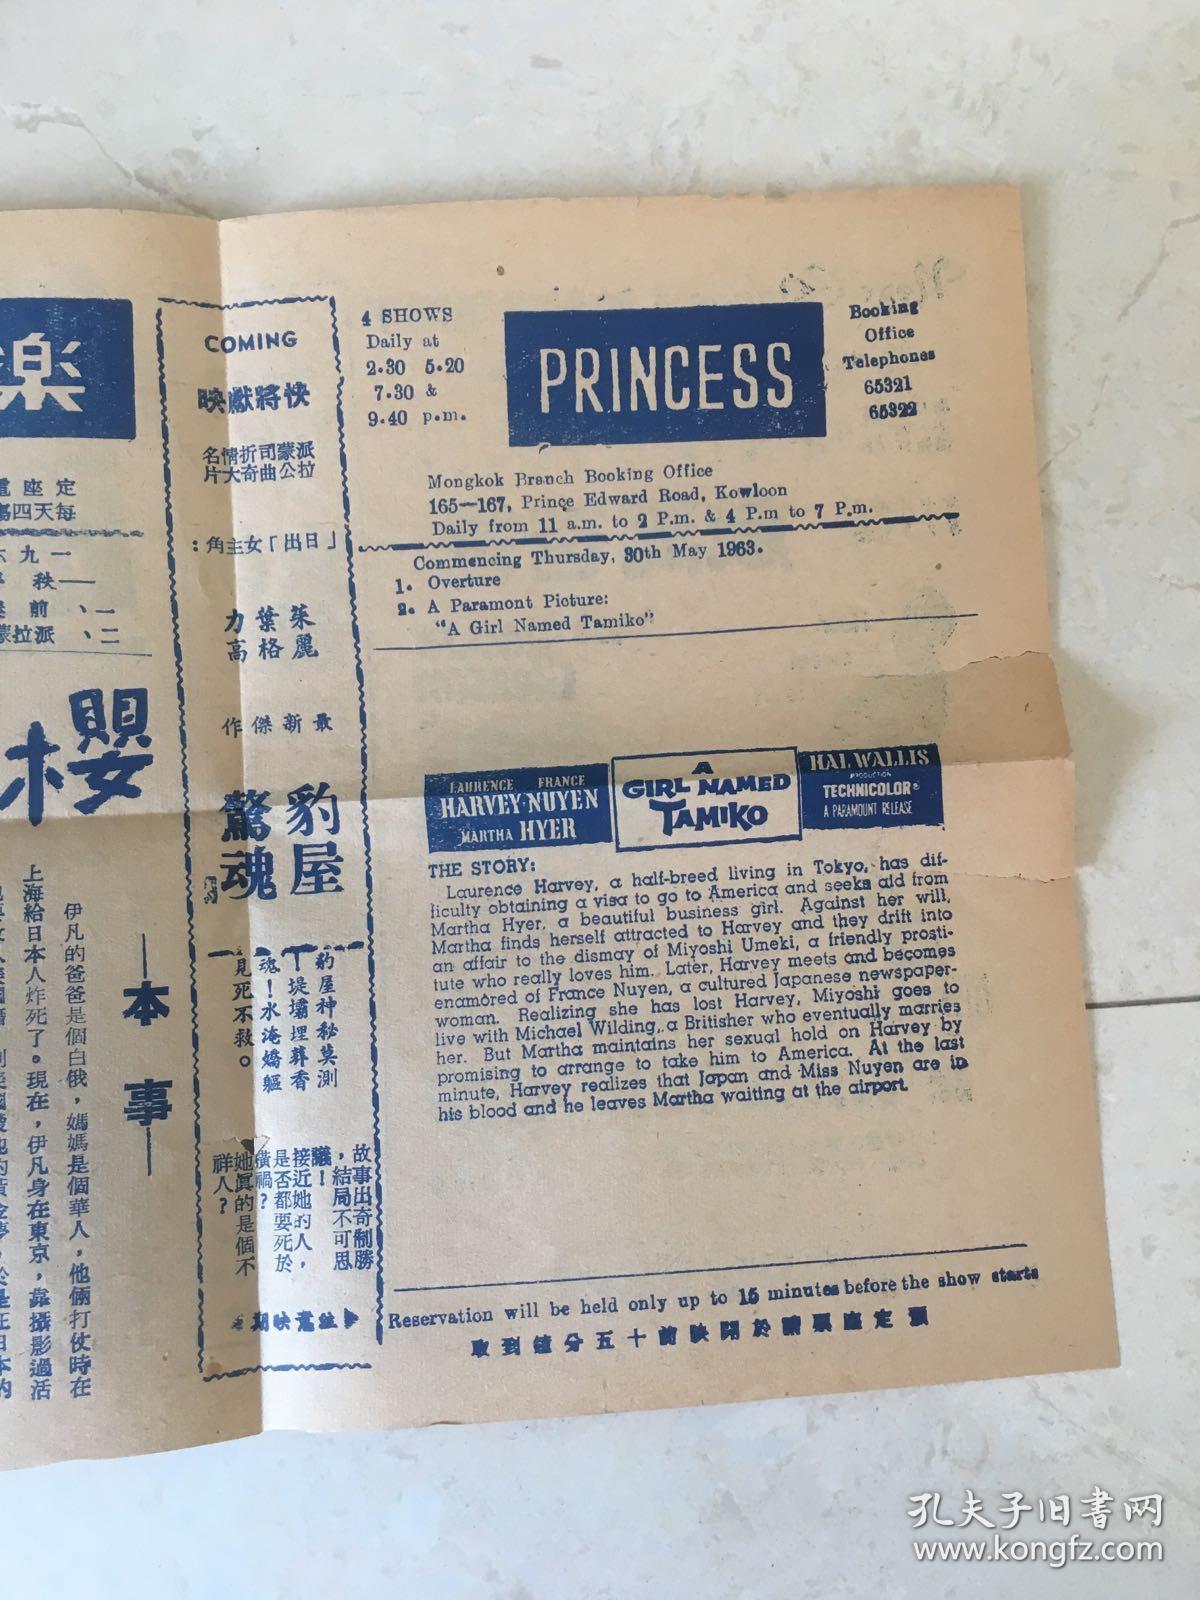 1963年香港电影宣传小海报一张 爸爸万岁，佳偶自天成，樱都一美人等简介